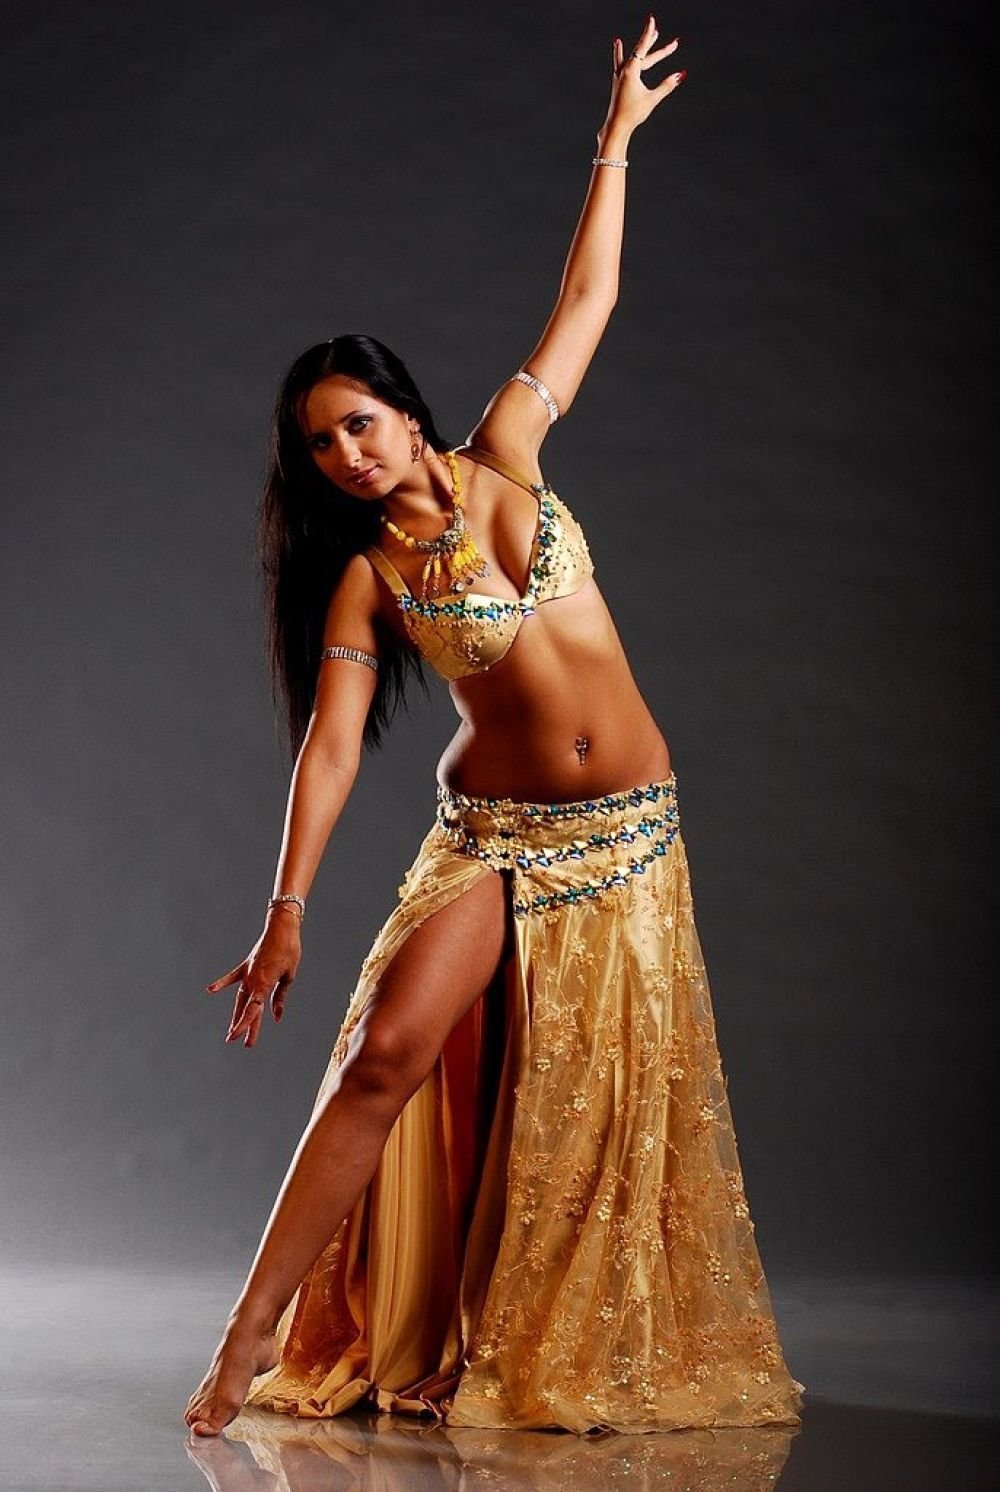 Турецкий танец живота. Белли дэнс танец живота. Танцовщица беллиданс. Индийская танцовщица Белли дэнс.